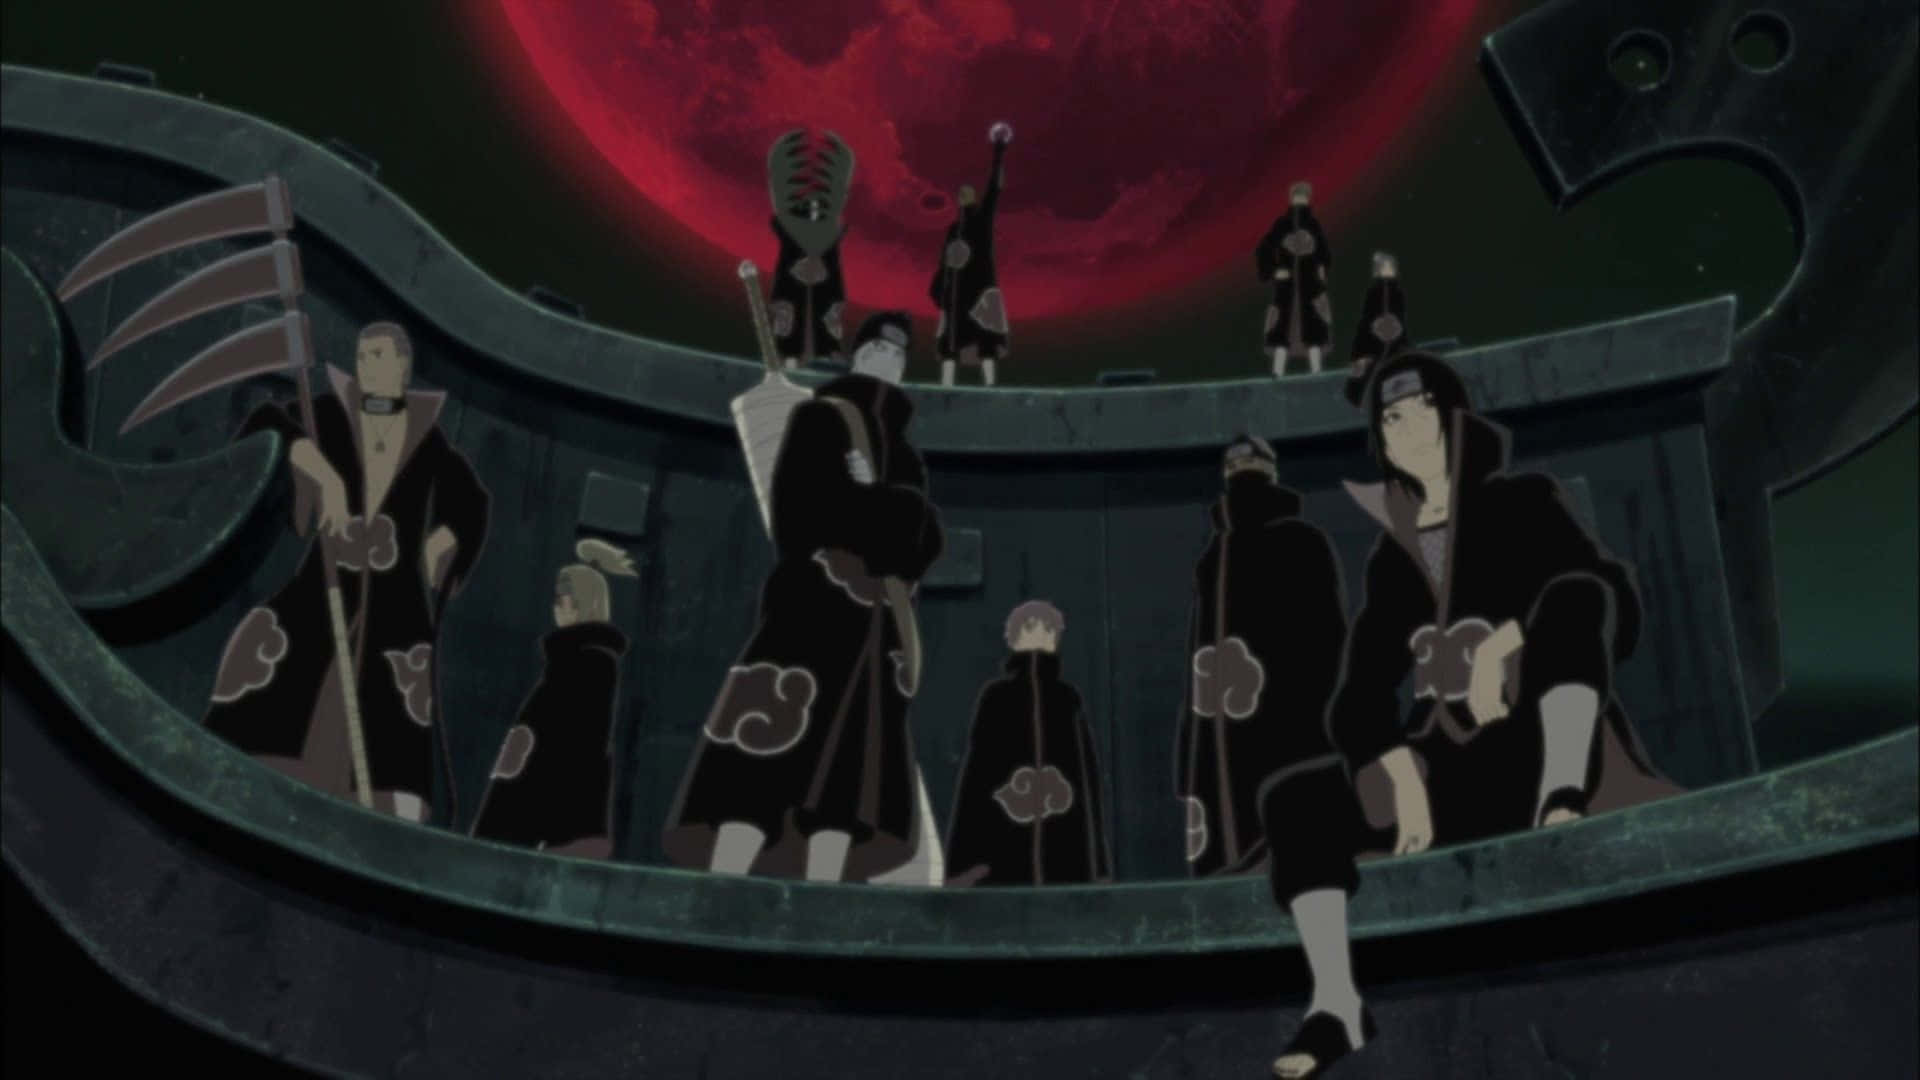 Itachiästhetisch Sitzend Mit Akatsuki-mitgliedern Unter Großem Roten Mond Wallpaper